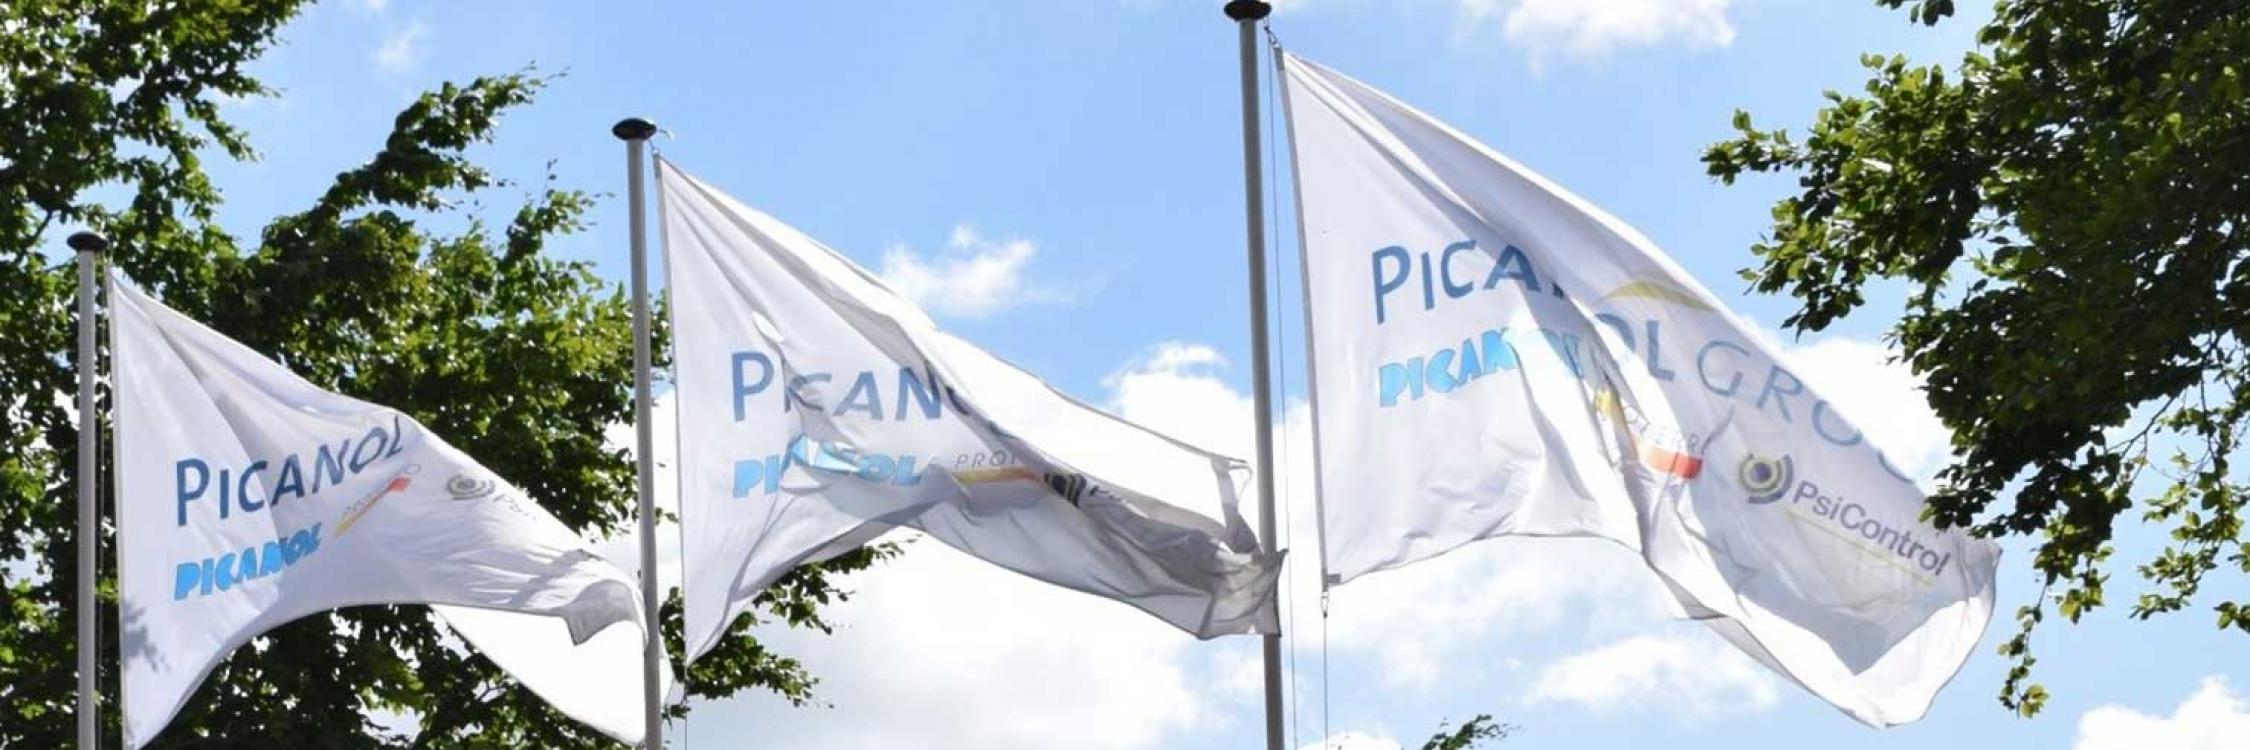 Picanol-Group.jpg